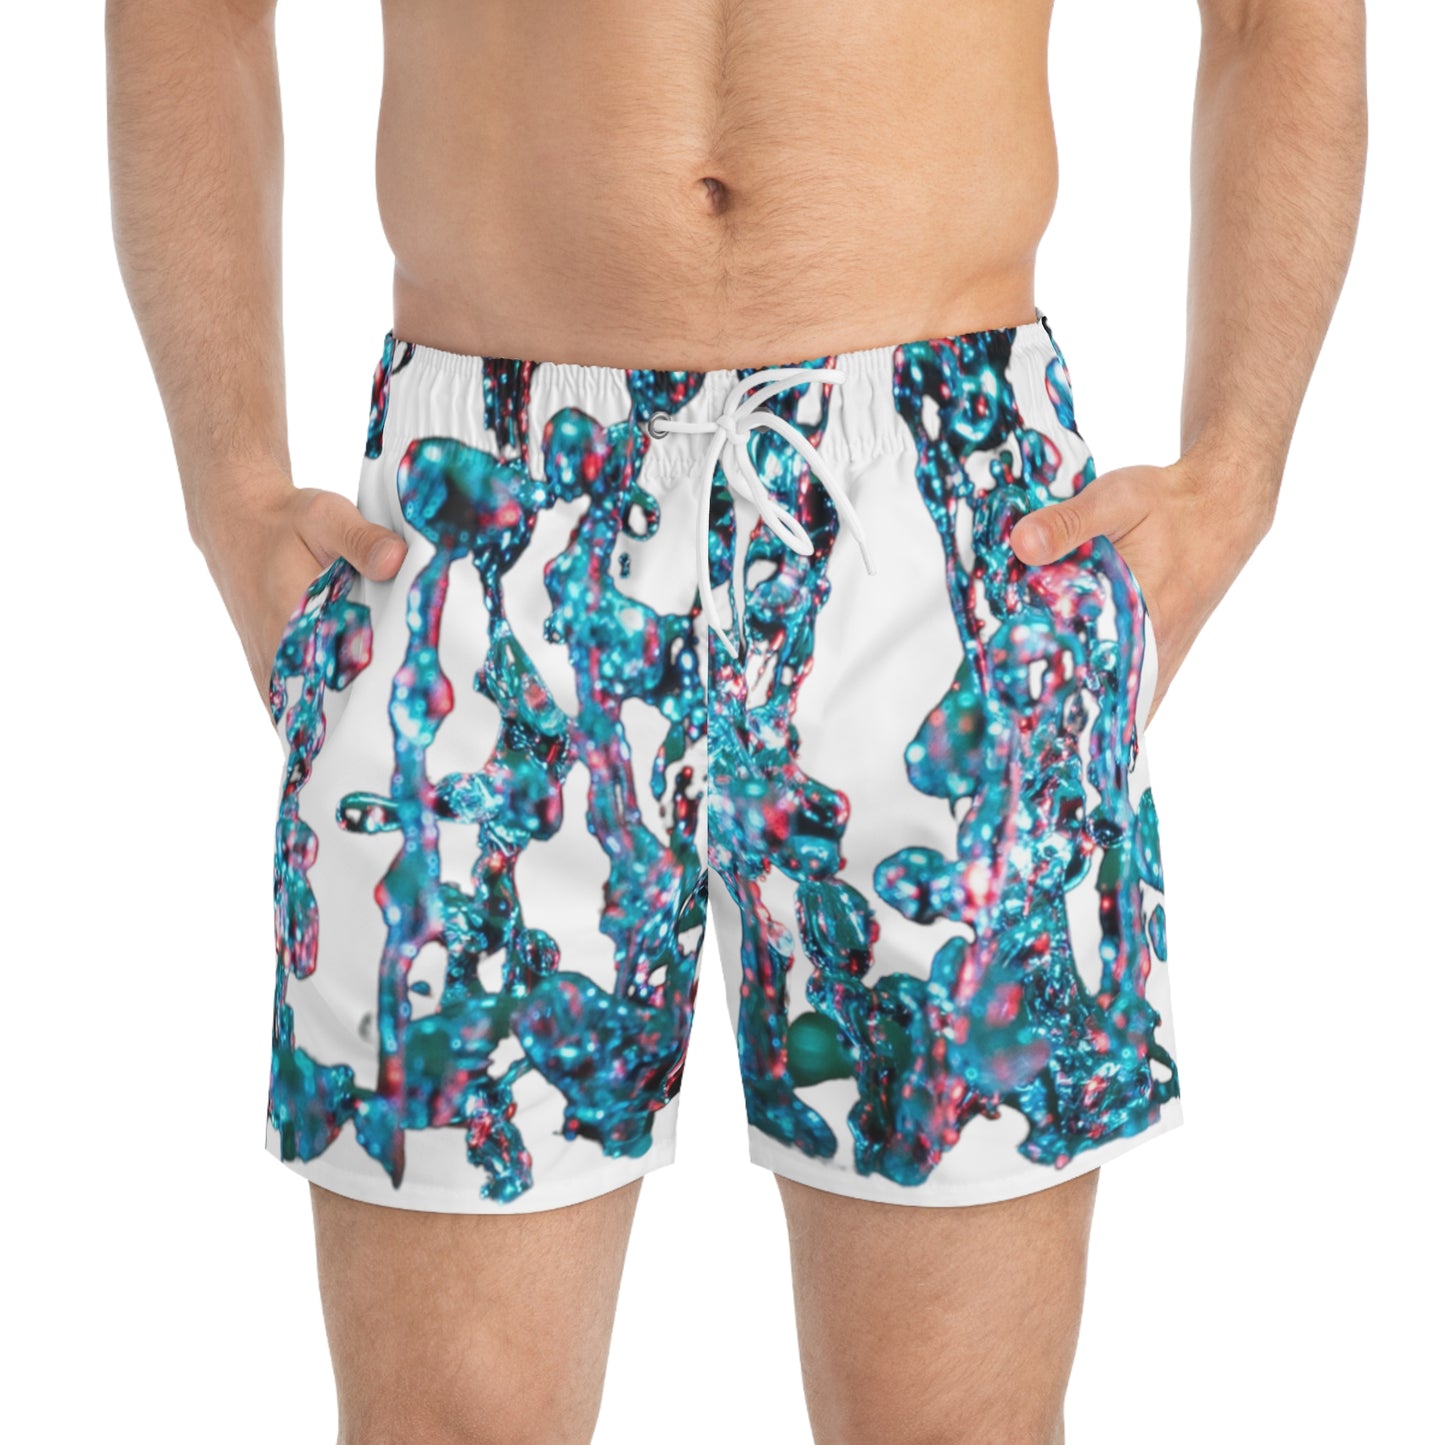 AquaVenture Coastal Shorts"